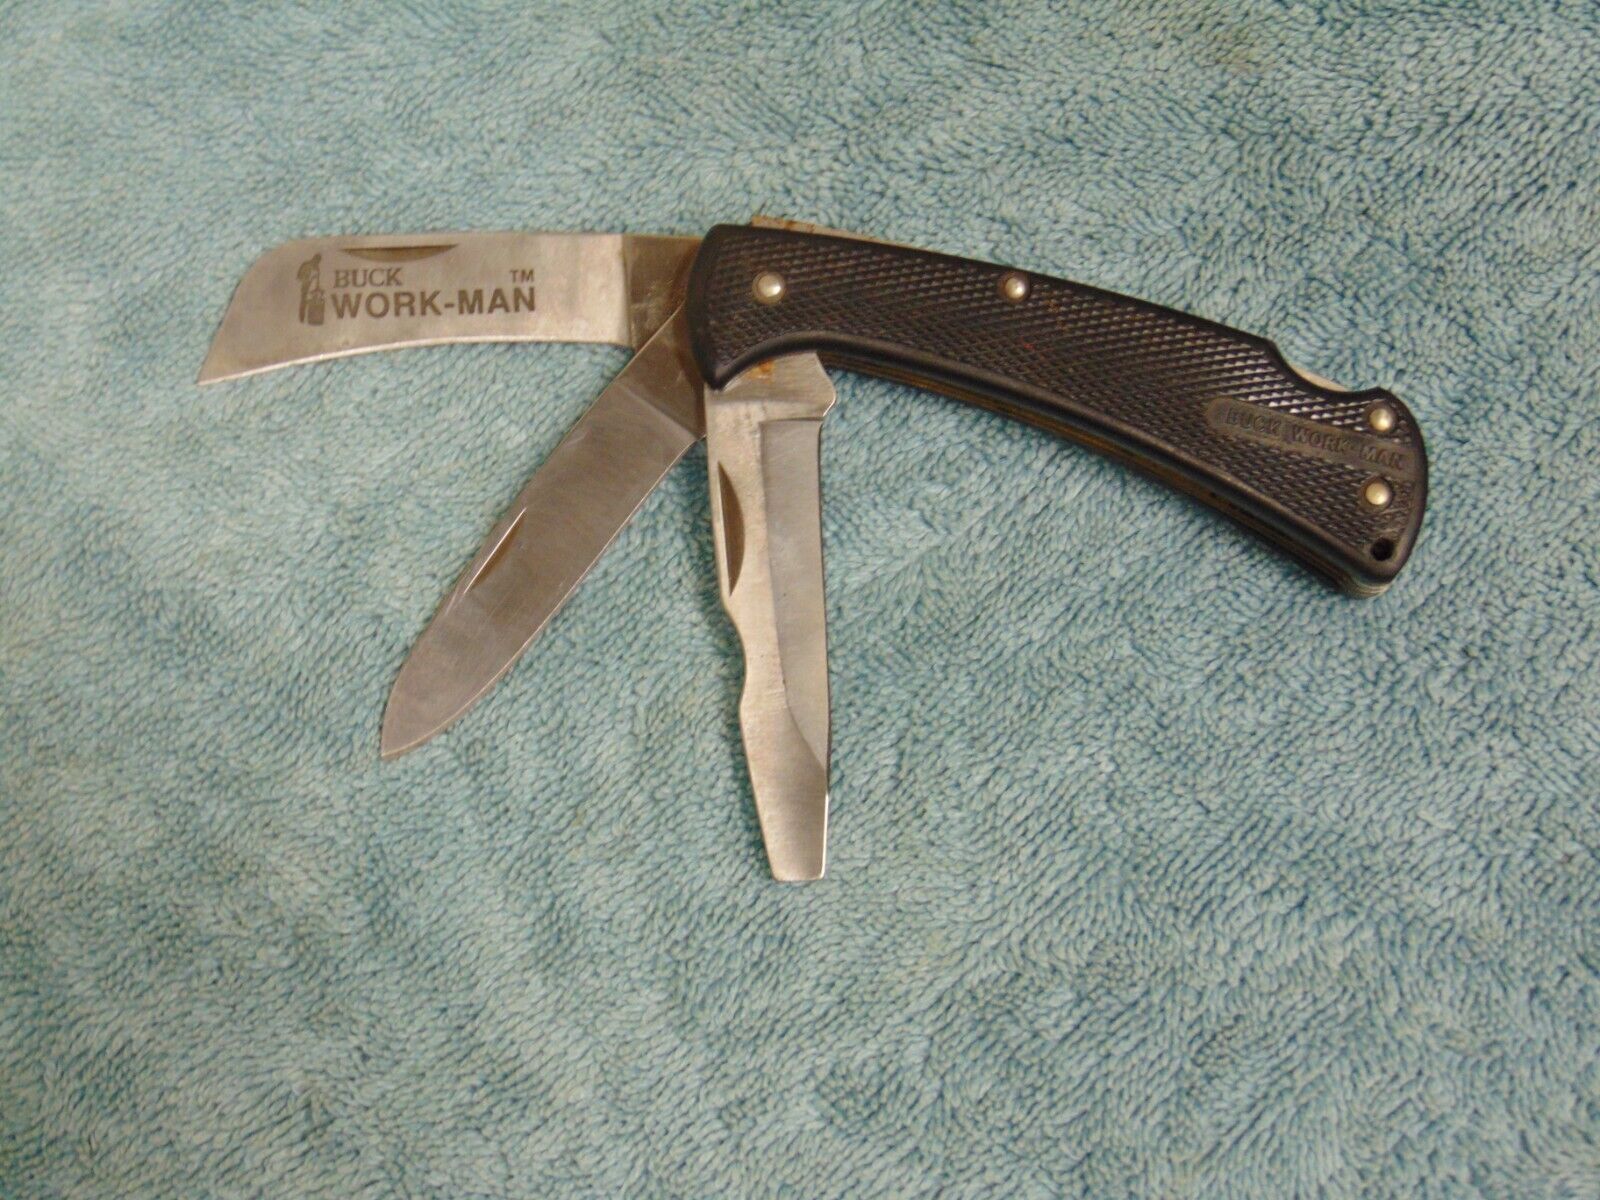 Vintage Buck Work-Man No. 812 Folding 3 Blade Pocket Knife